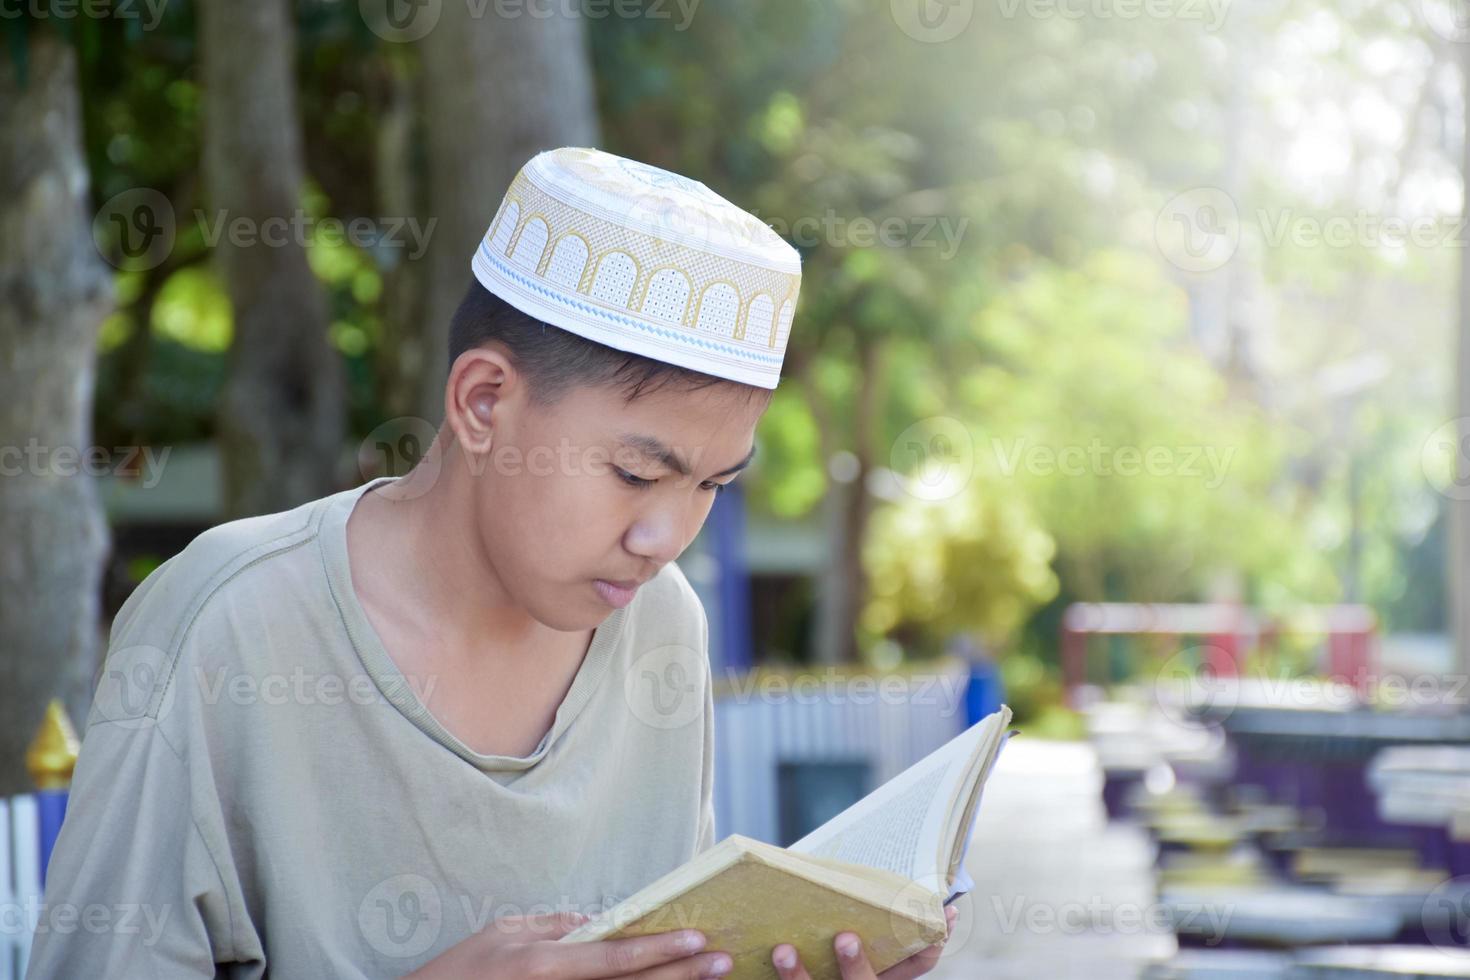 jovem muçulmano asiático usa chapéu, sentado no parque da escola e lendo seu livro em seus tempos livres antes de voltar para casa, foco suave e seletivo. foto